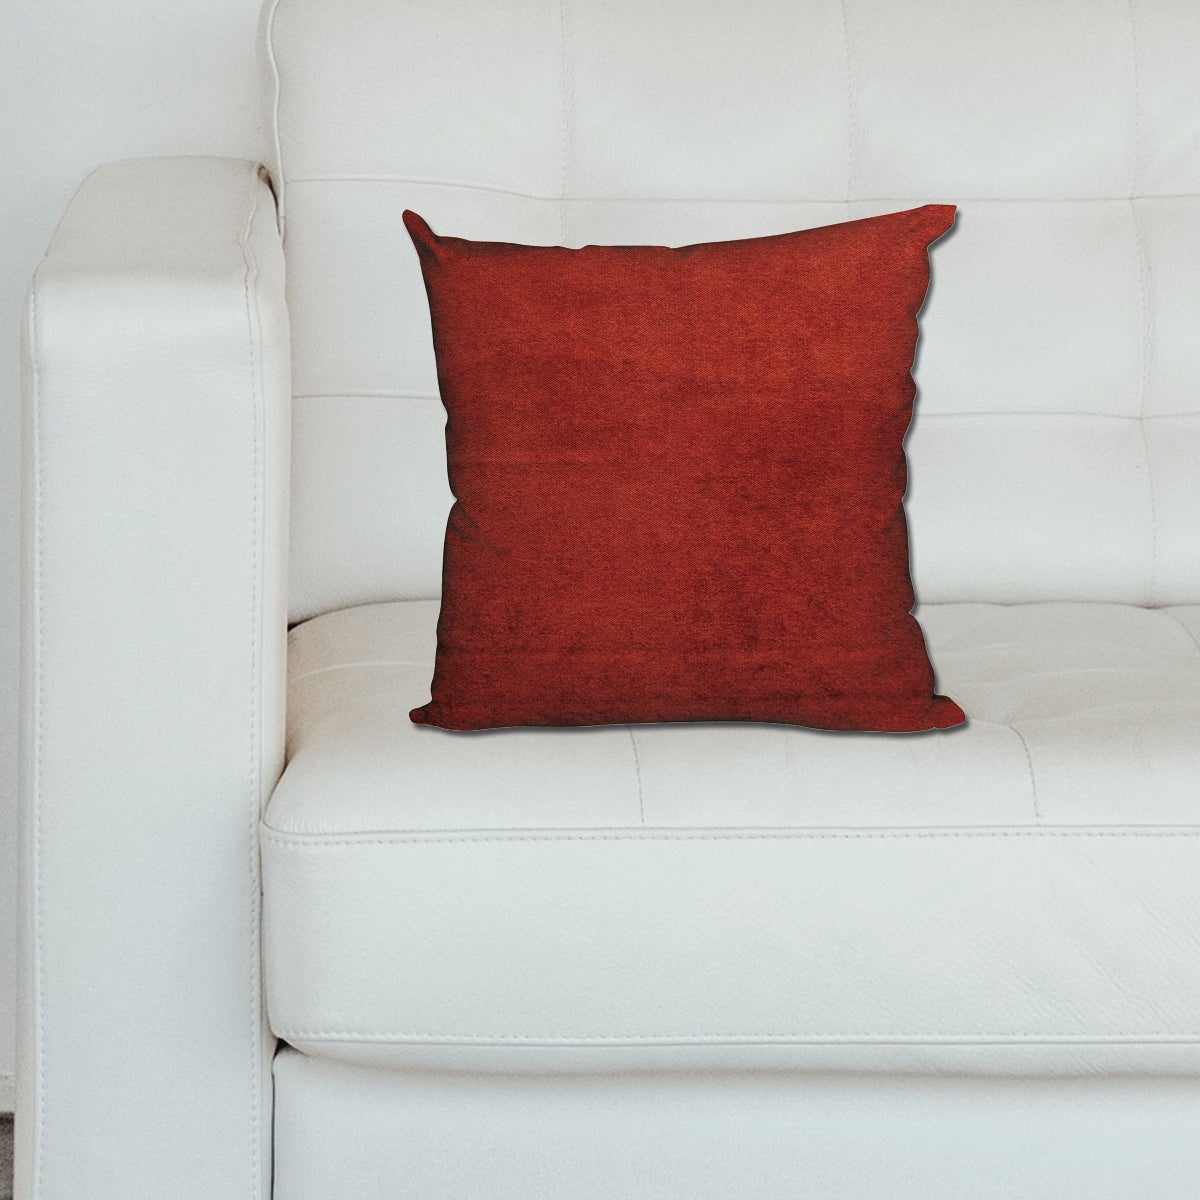 Cuscini divano 60x60 al miglior prezzo - Pagina 2